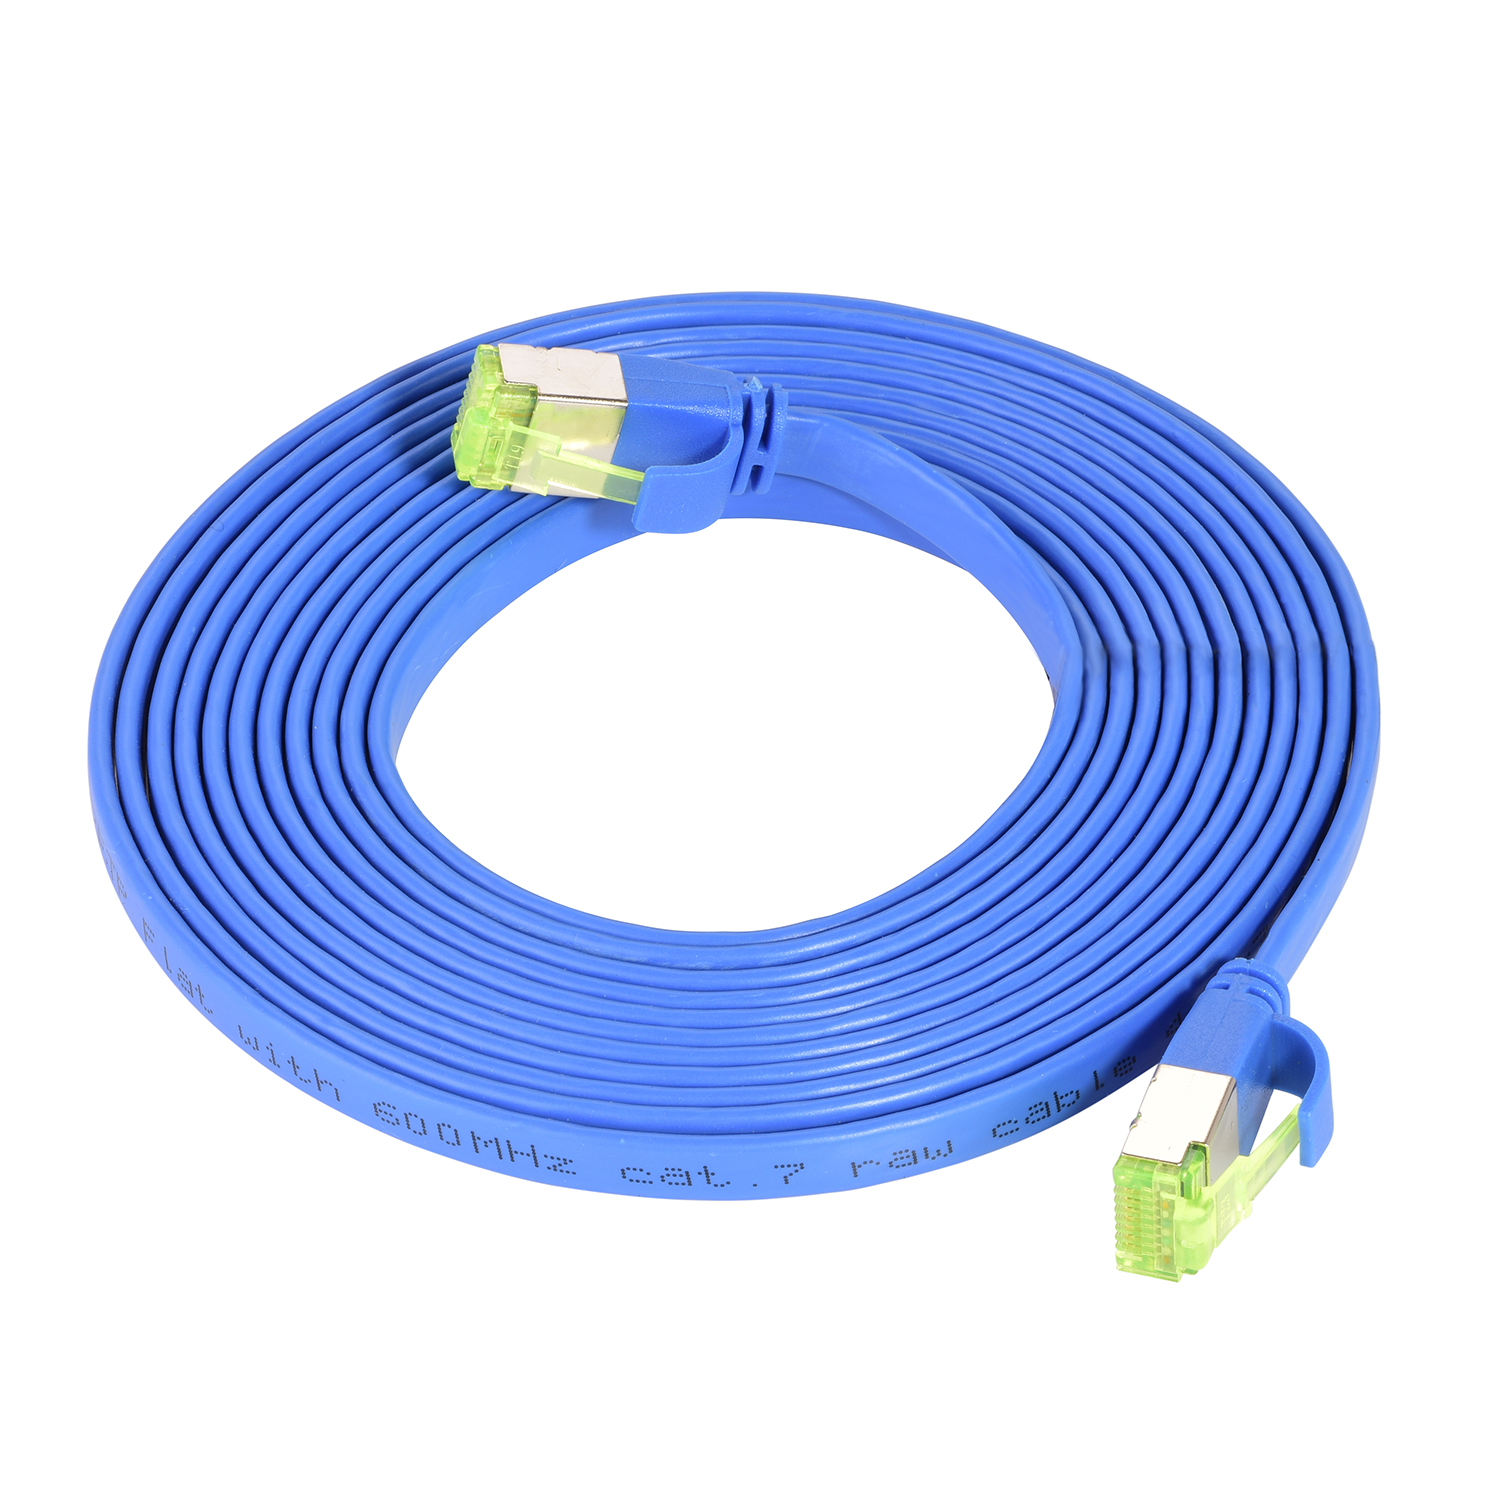 TPFNET 0,25m Patchkabel / blau, U/FTP 0,25 10 m Netzwerkkabel, GBit, Flachkabel